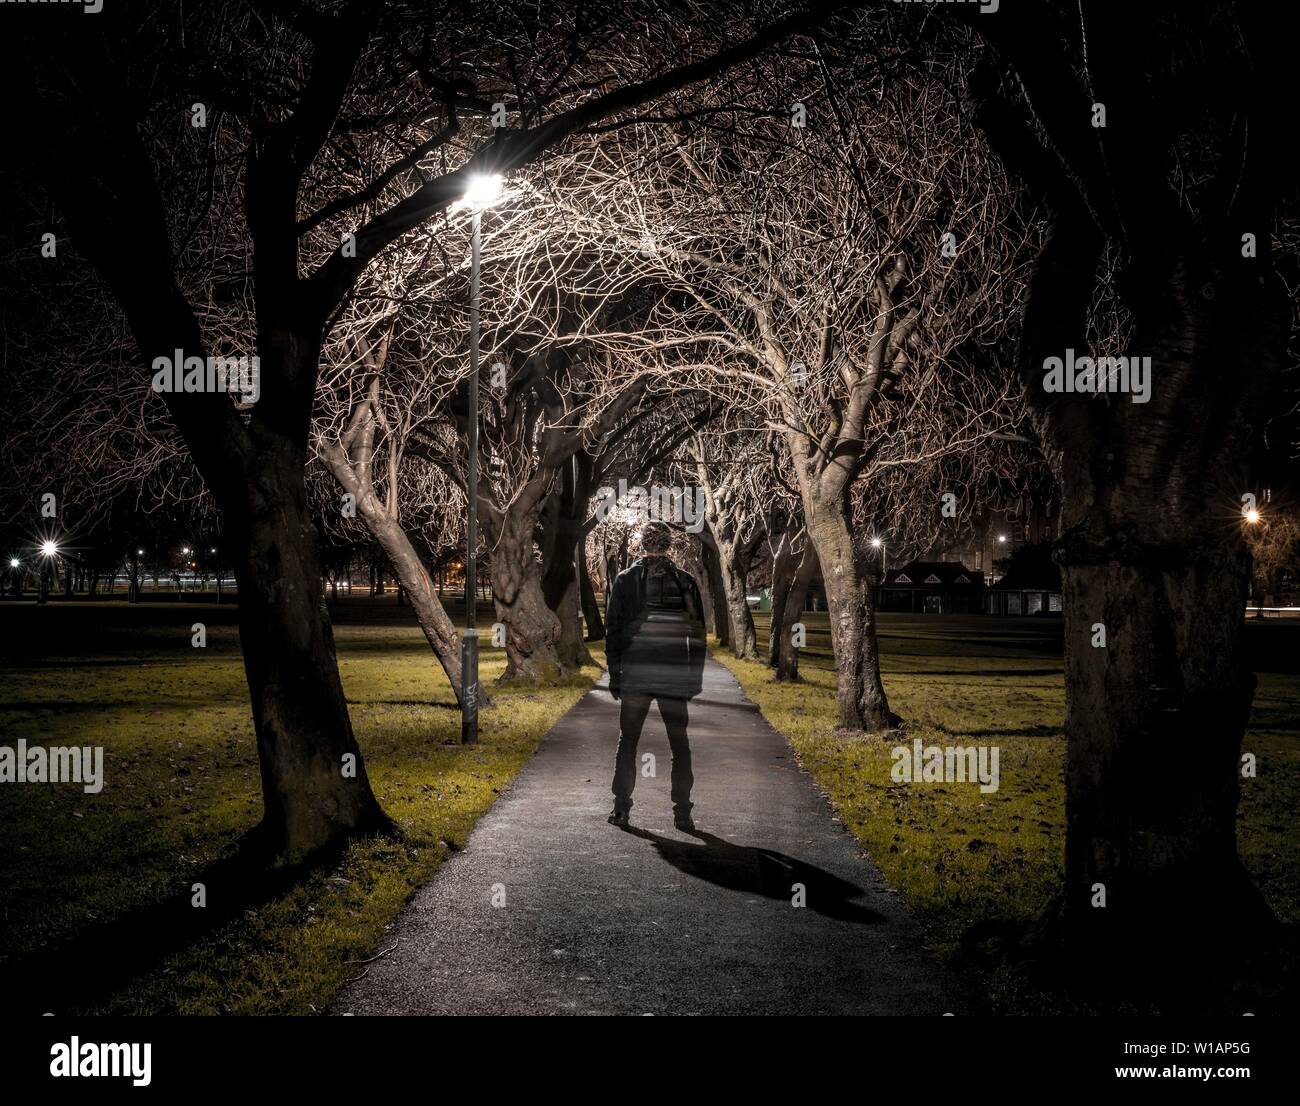 Geisterhafte Silhouette einer dunklen Person auf einen Pfad durch eine Allee an der Nacht, trübe Stimmung, Krönung Spaziergang im Meadows Park, Edinburgh, Schottland Stockfoto